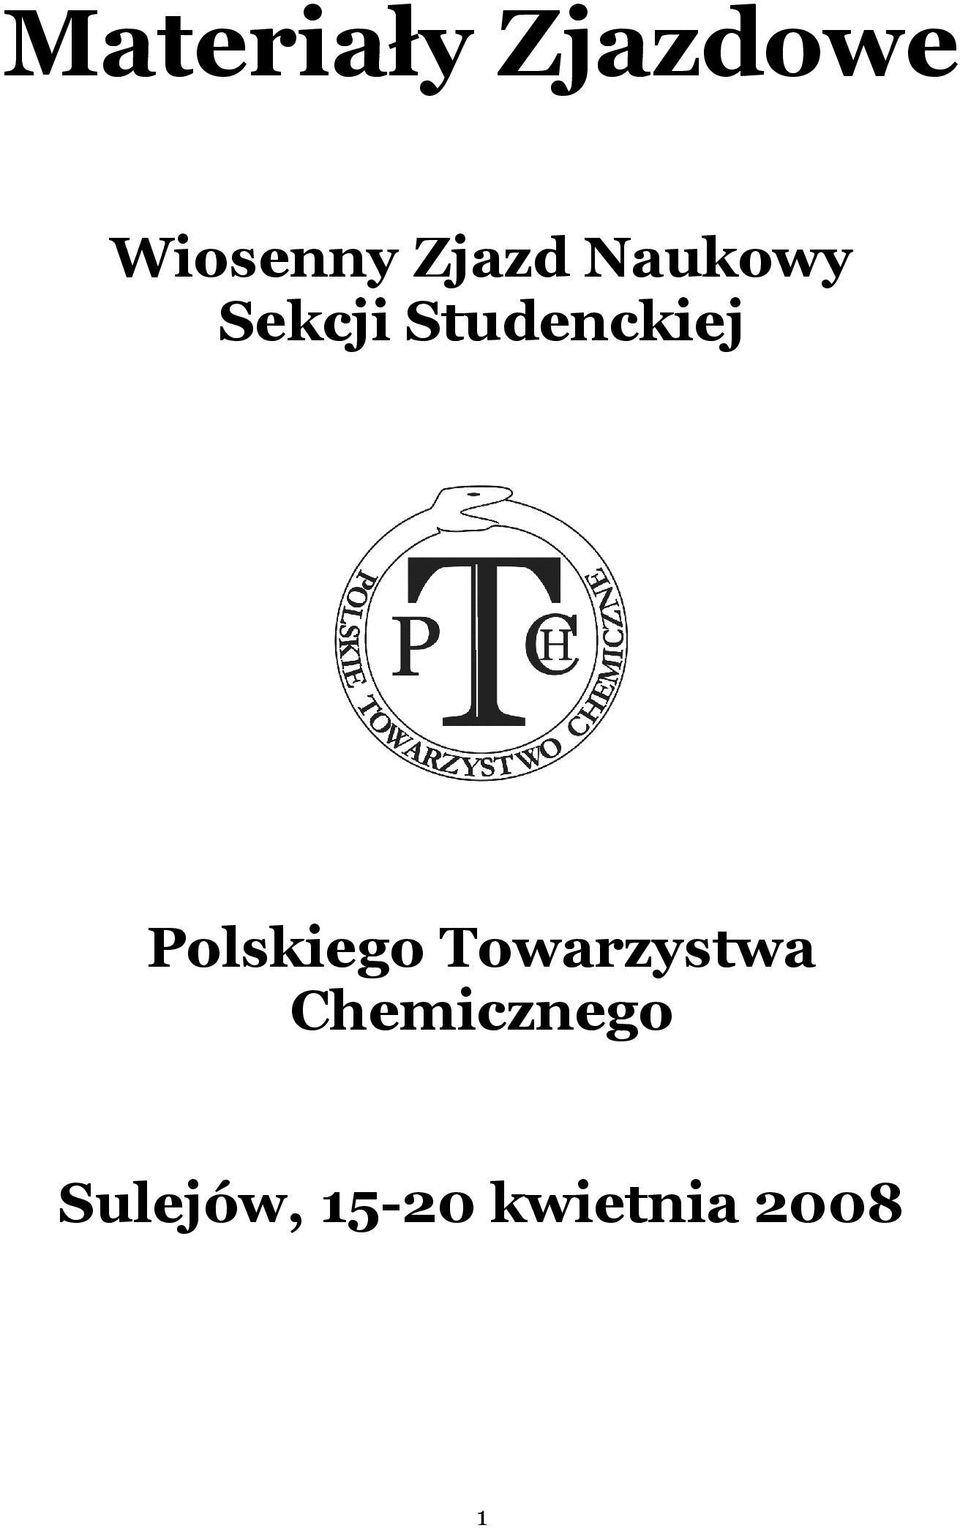 Studenckiej Polskiego